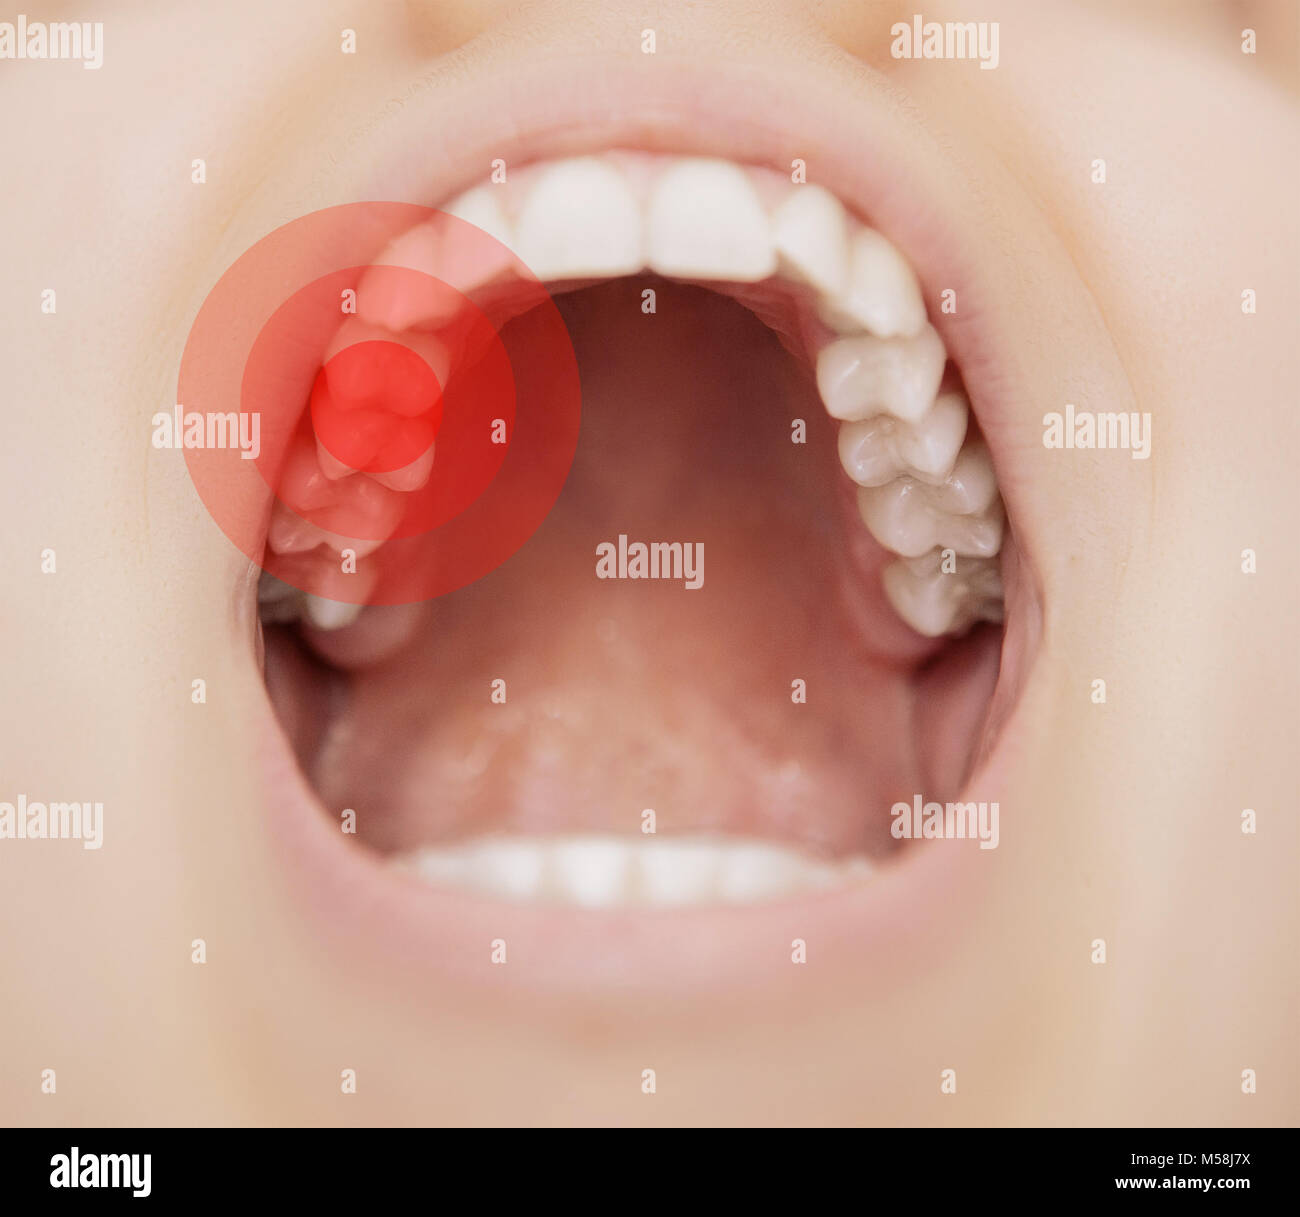 Tootache, aprire bocca con dolore, toothcare Foto Stock